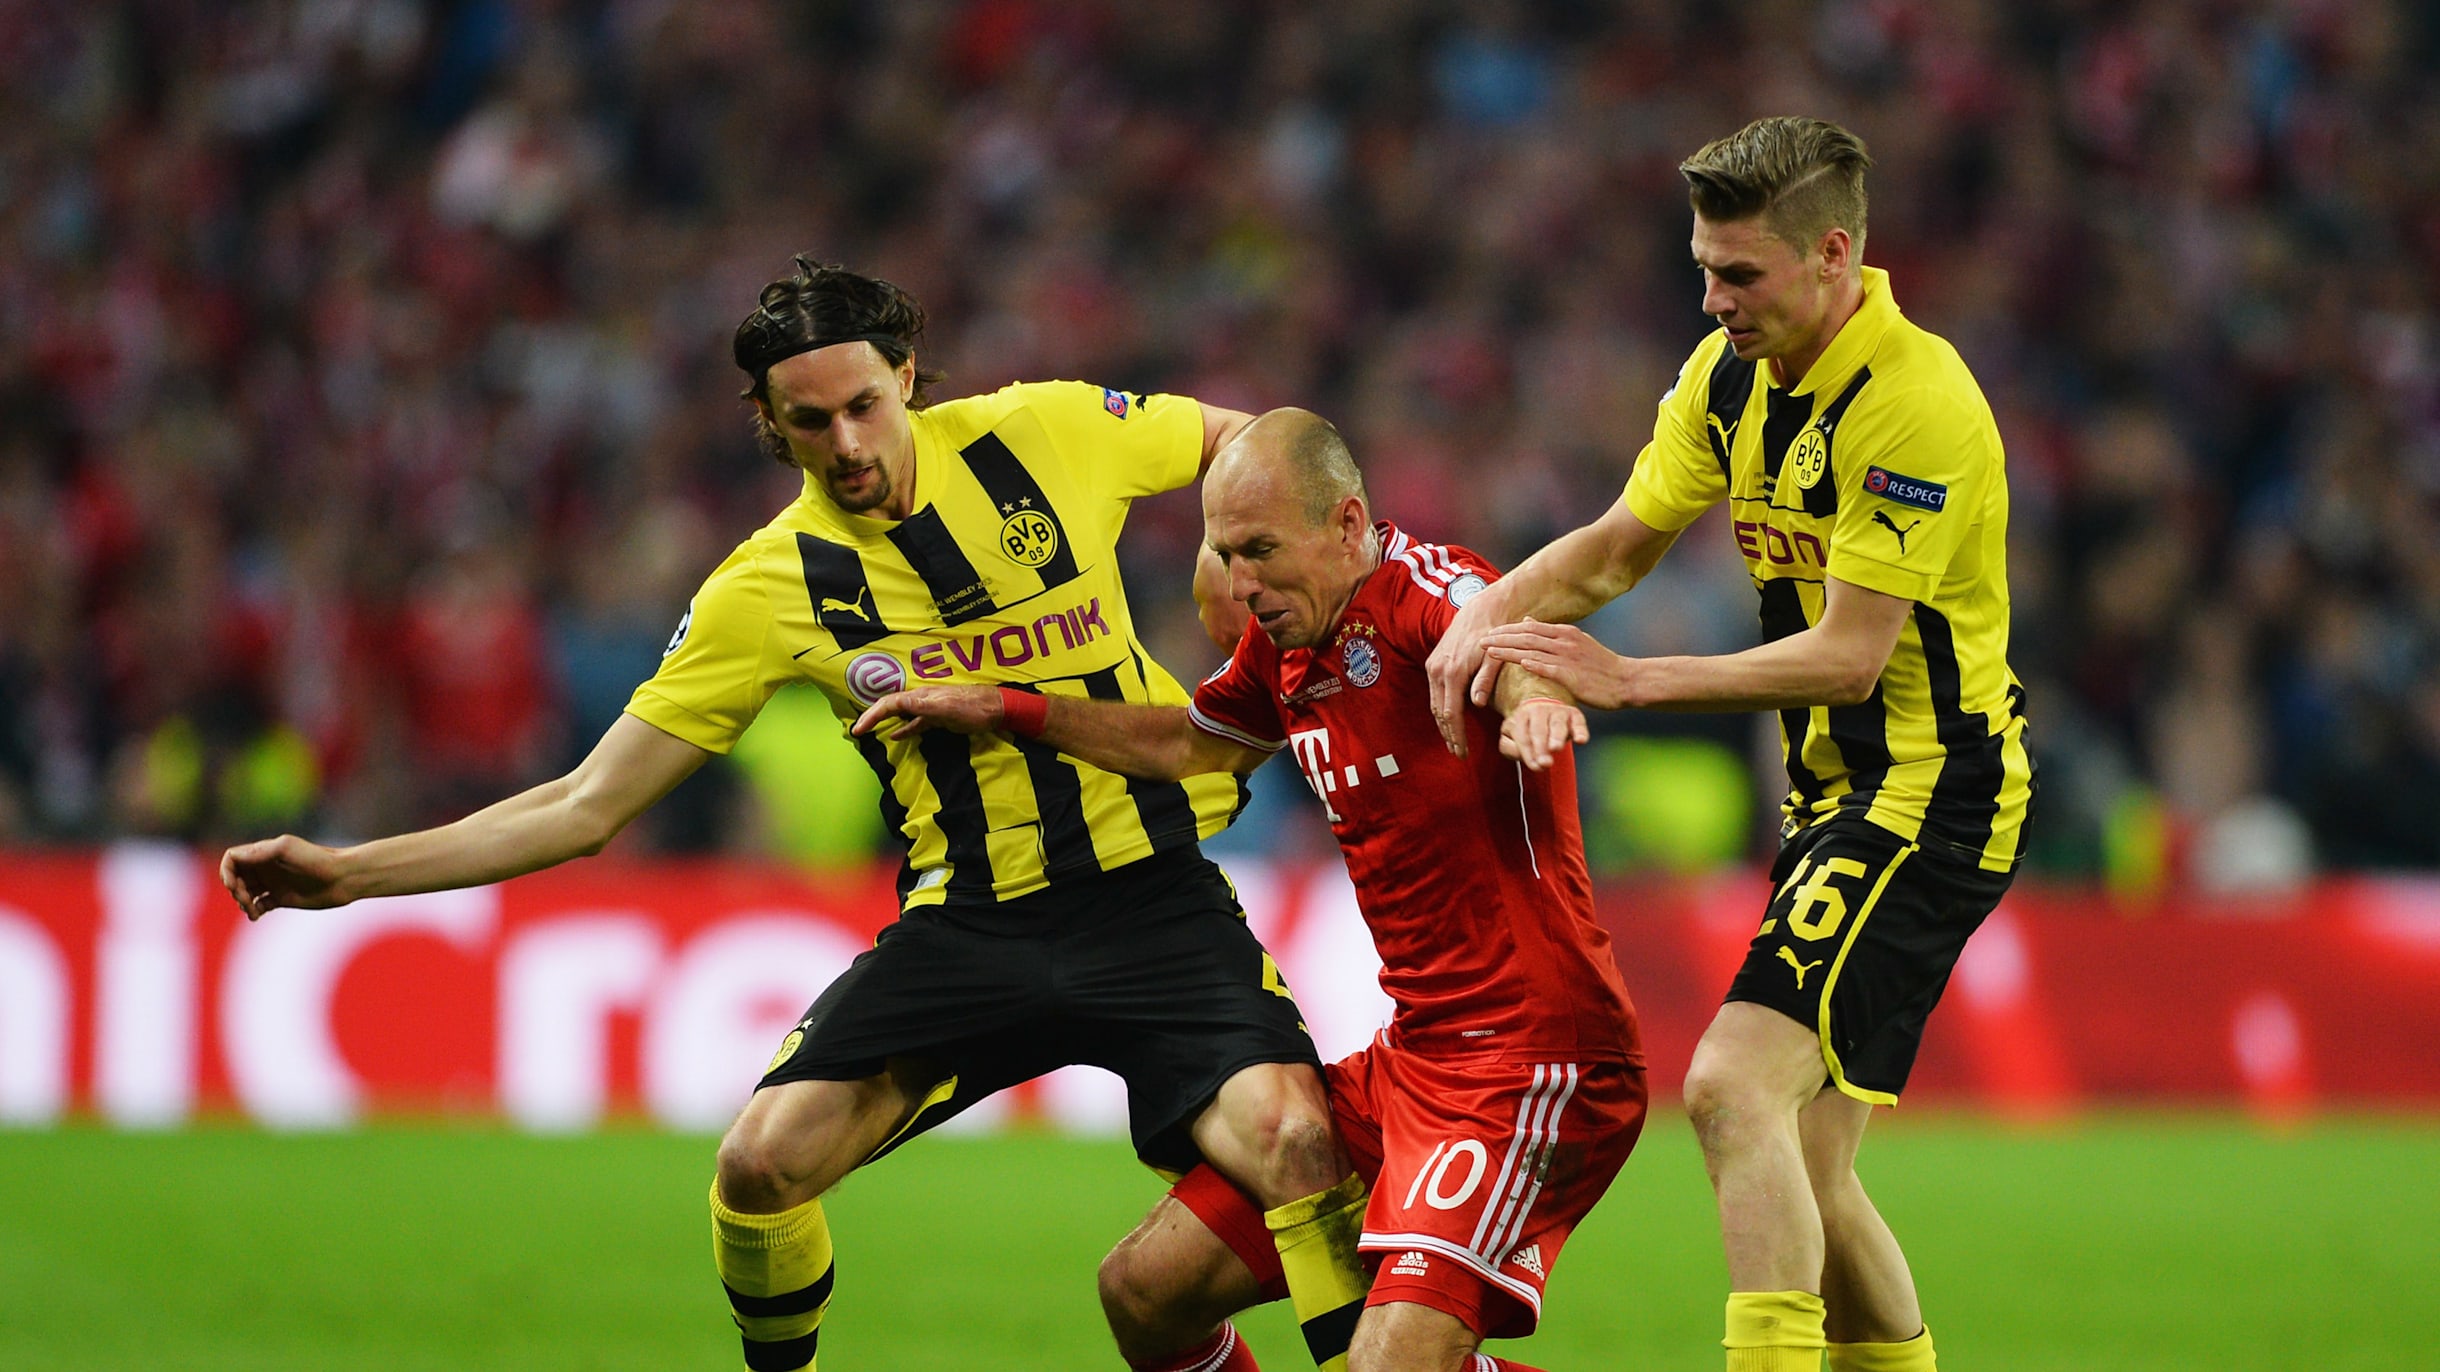 UEFA Champions League: Cuntas finales ha jugado el Borussia Dortmund?